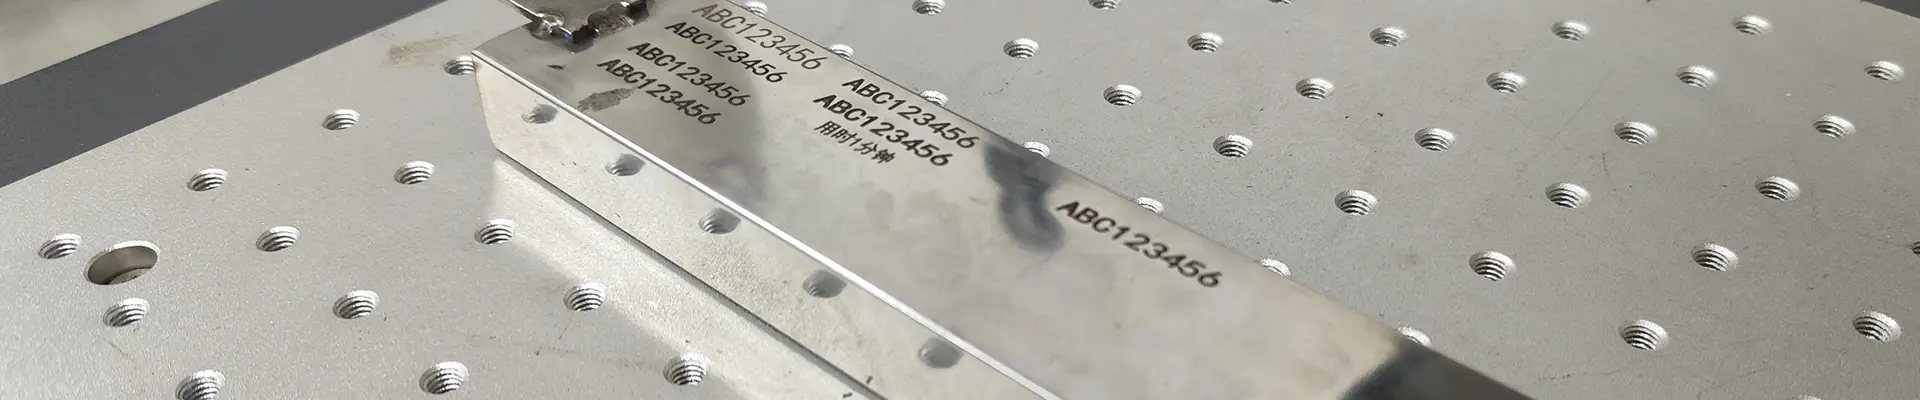 laser engraver metal marking spray